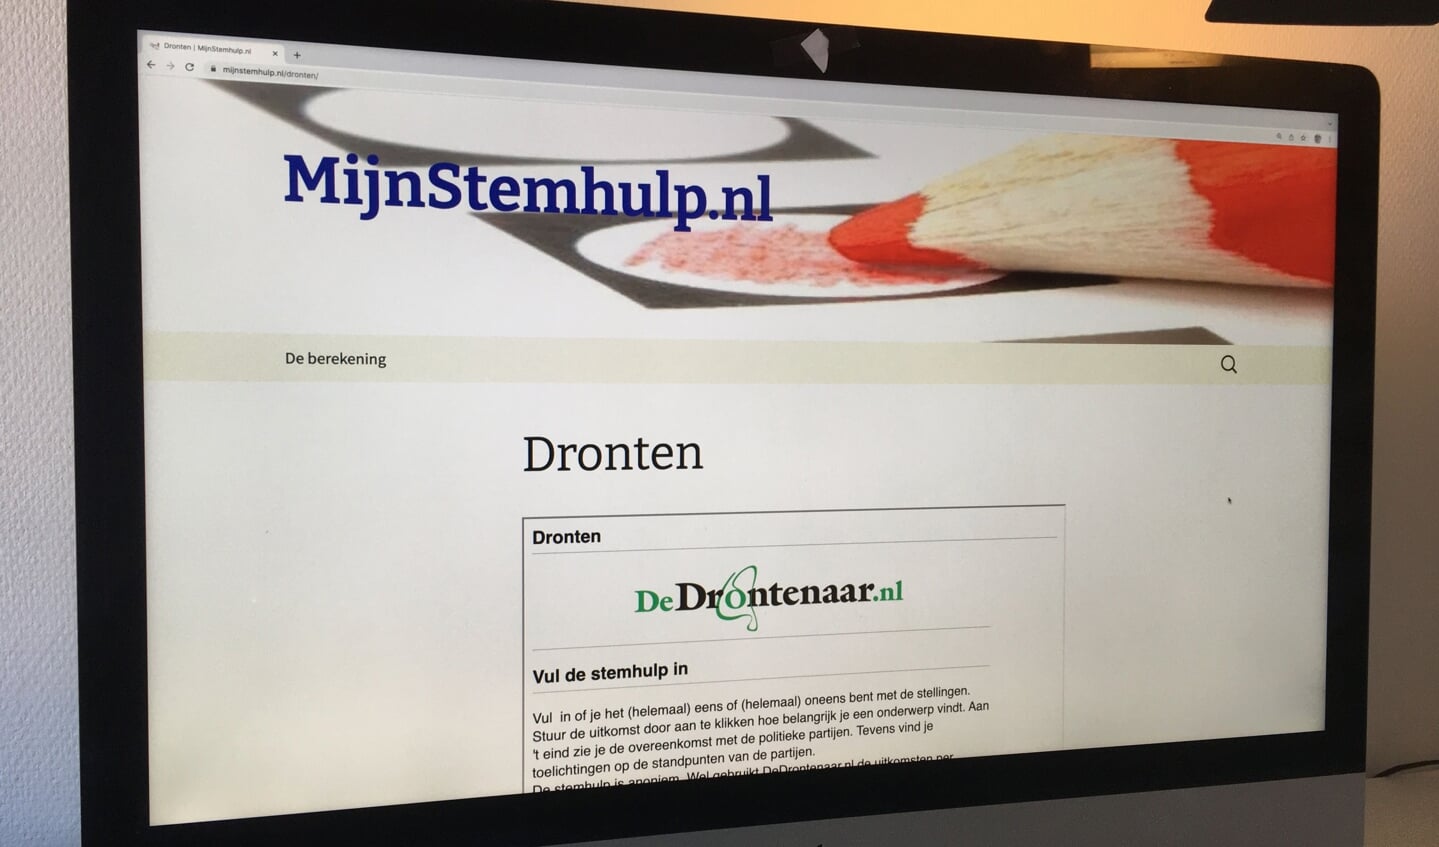 De onafhankelijke stemhulp van DeDrontenaar.nl.